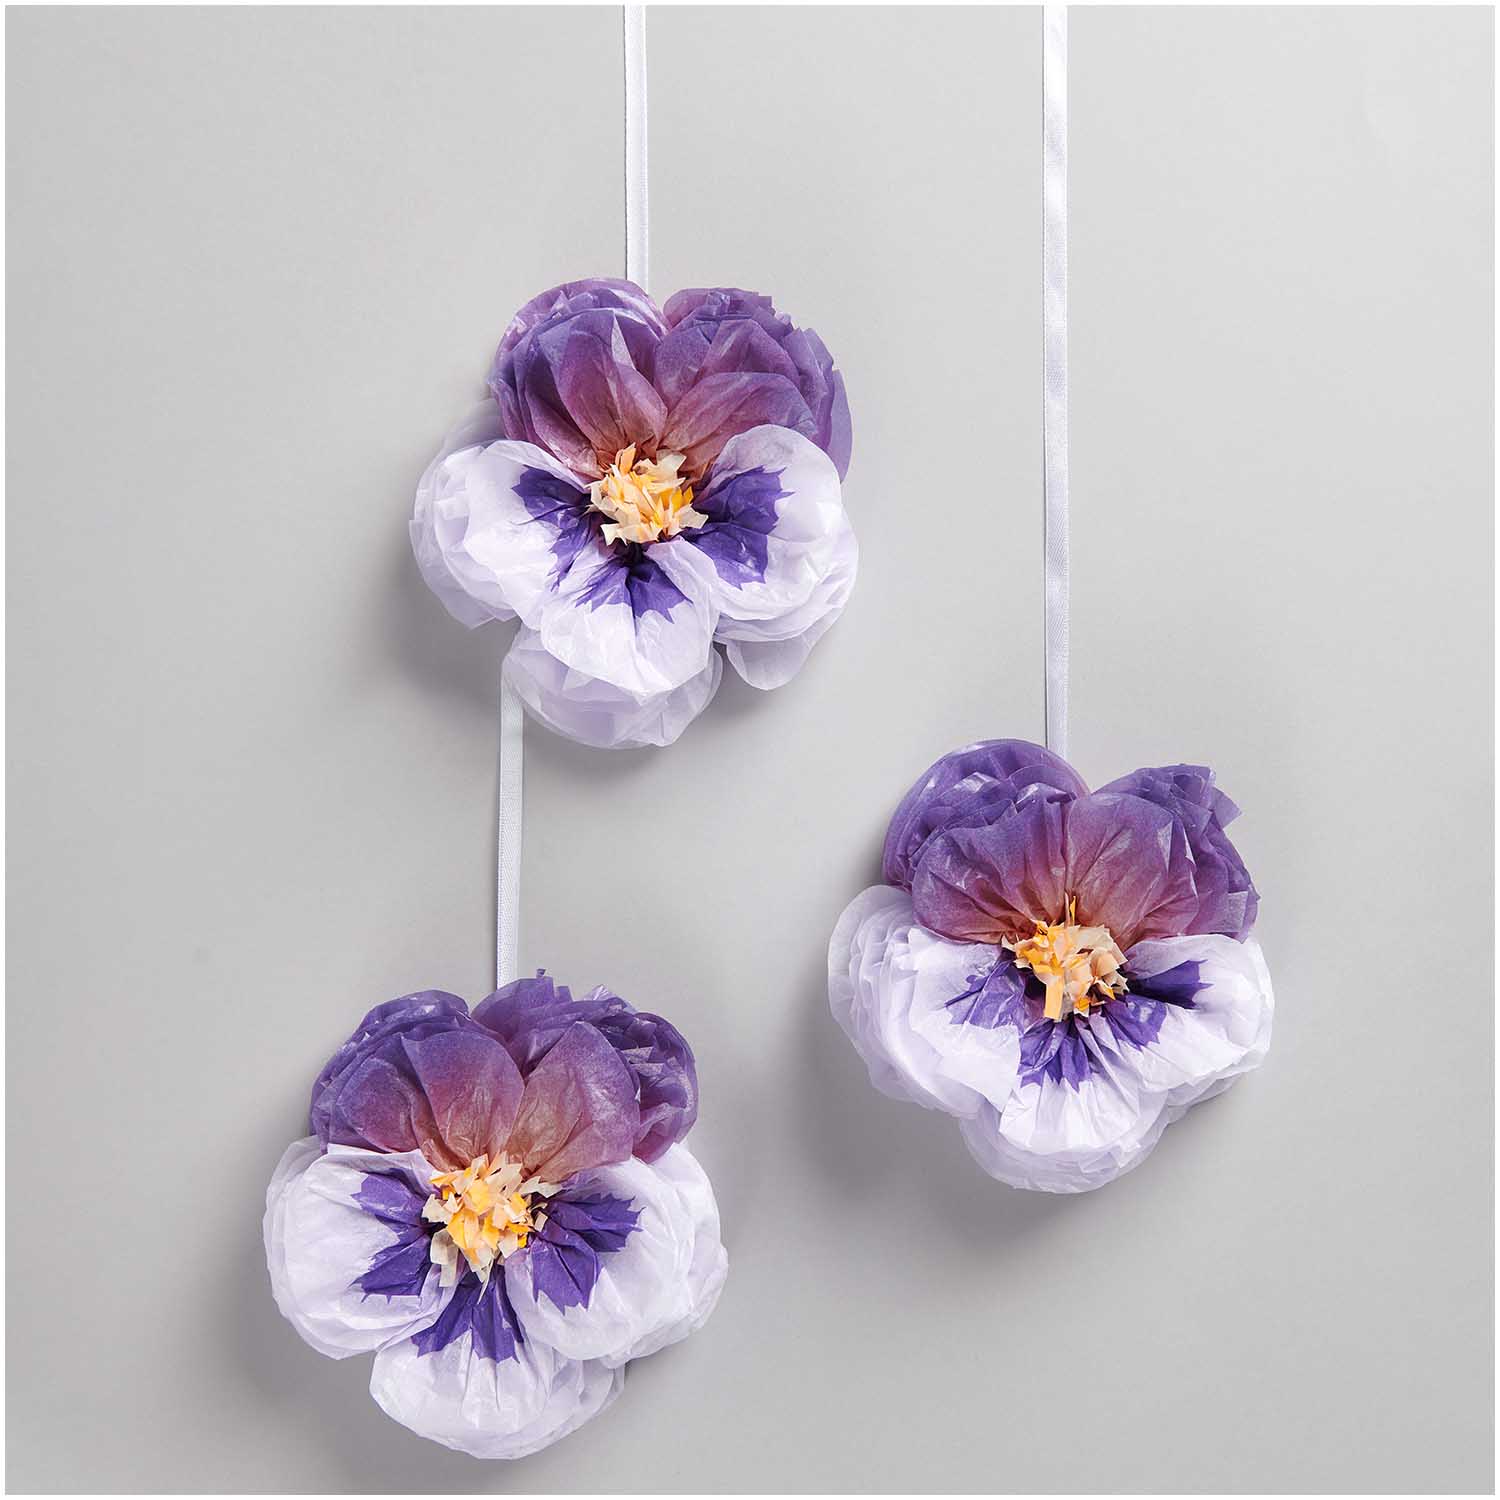 Tissue papieren bloemen viooltjes deco decoratie feest verjaardag communie lentefeest lente zomer floraal